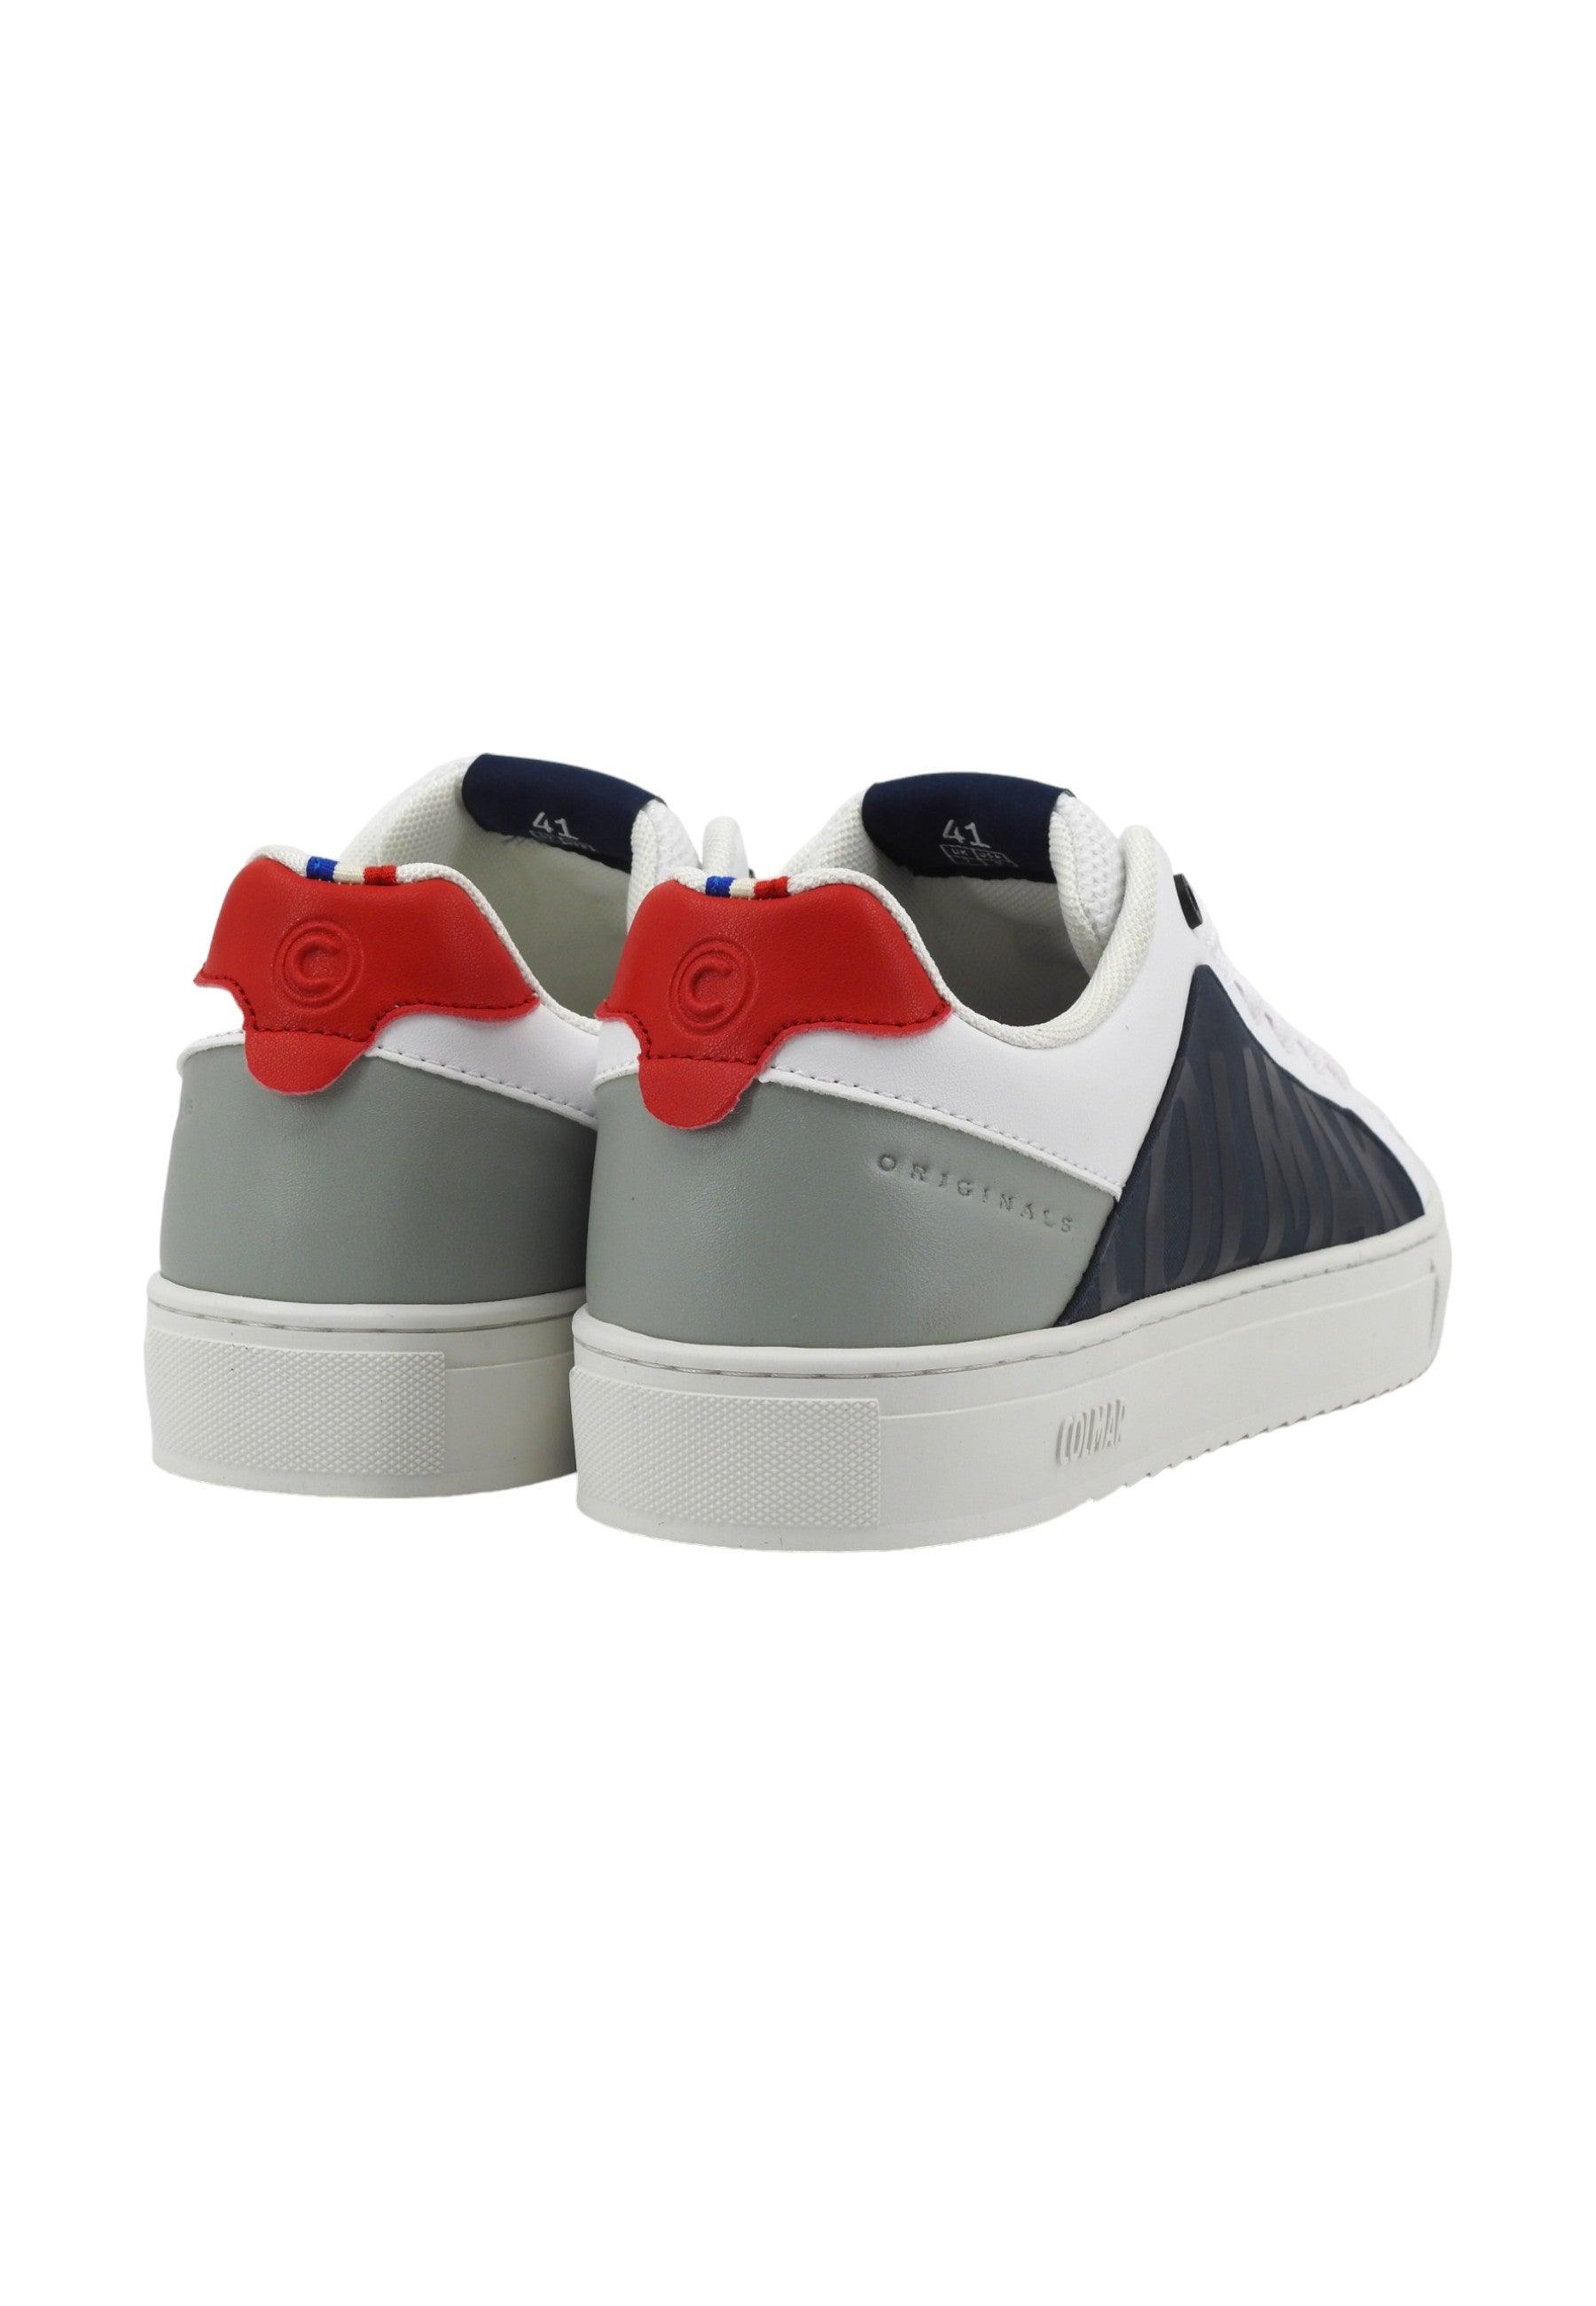 COLMAR Sneaker Uomo Navy Red White BRADBURY CHROMATIC BLOCK - Sandrini Calzature e Abbigliamento